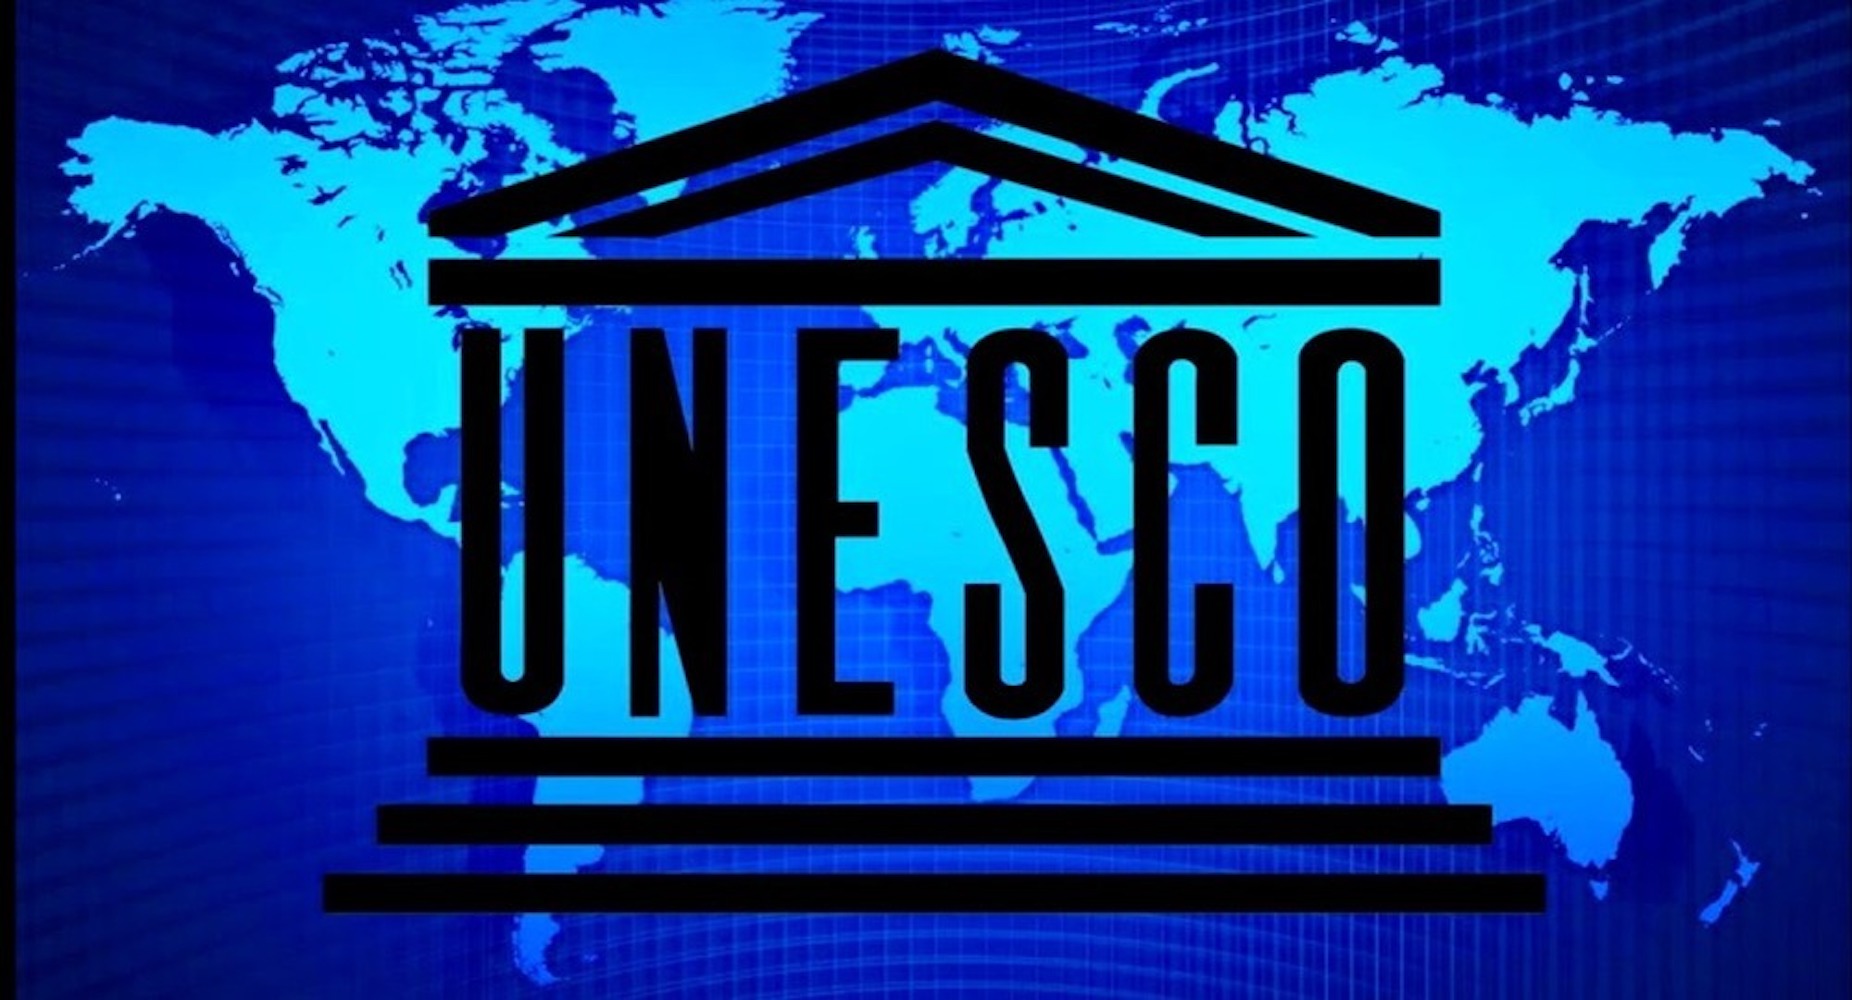 Unesco org. ООН по вопросам образования науки и культуры ЮНЕСКО. ЮНЕСКО эмблема. Организация ЮНЕСКО. Логотип организации ЮНЕСКО.